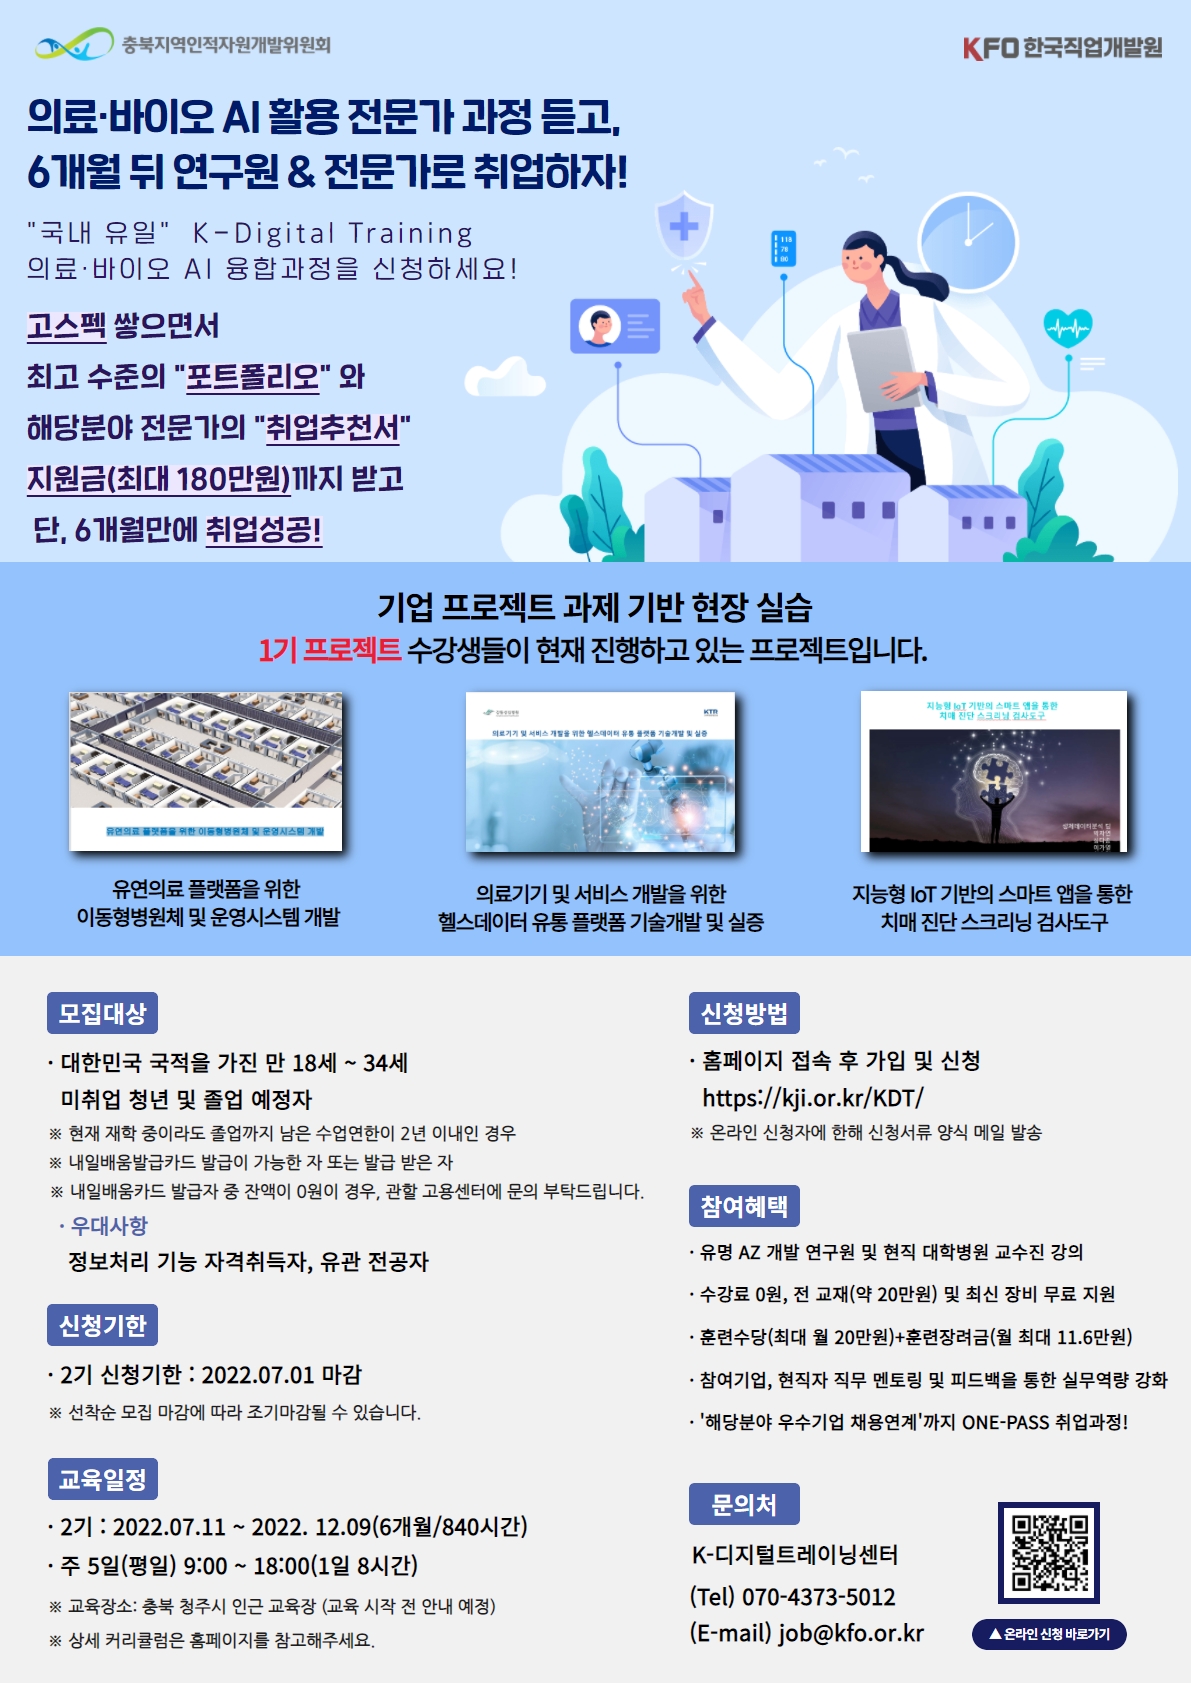 [안내] 「K-Digital Training 사업 참여자 모집」 개최안내 1번째 파일